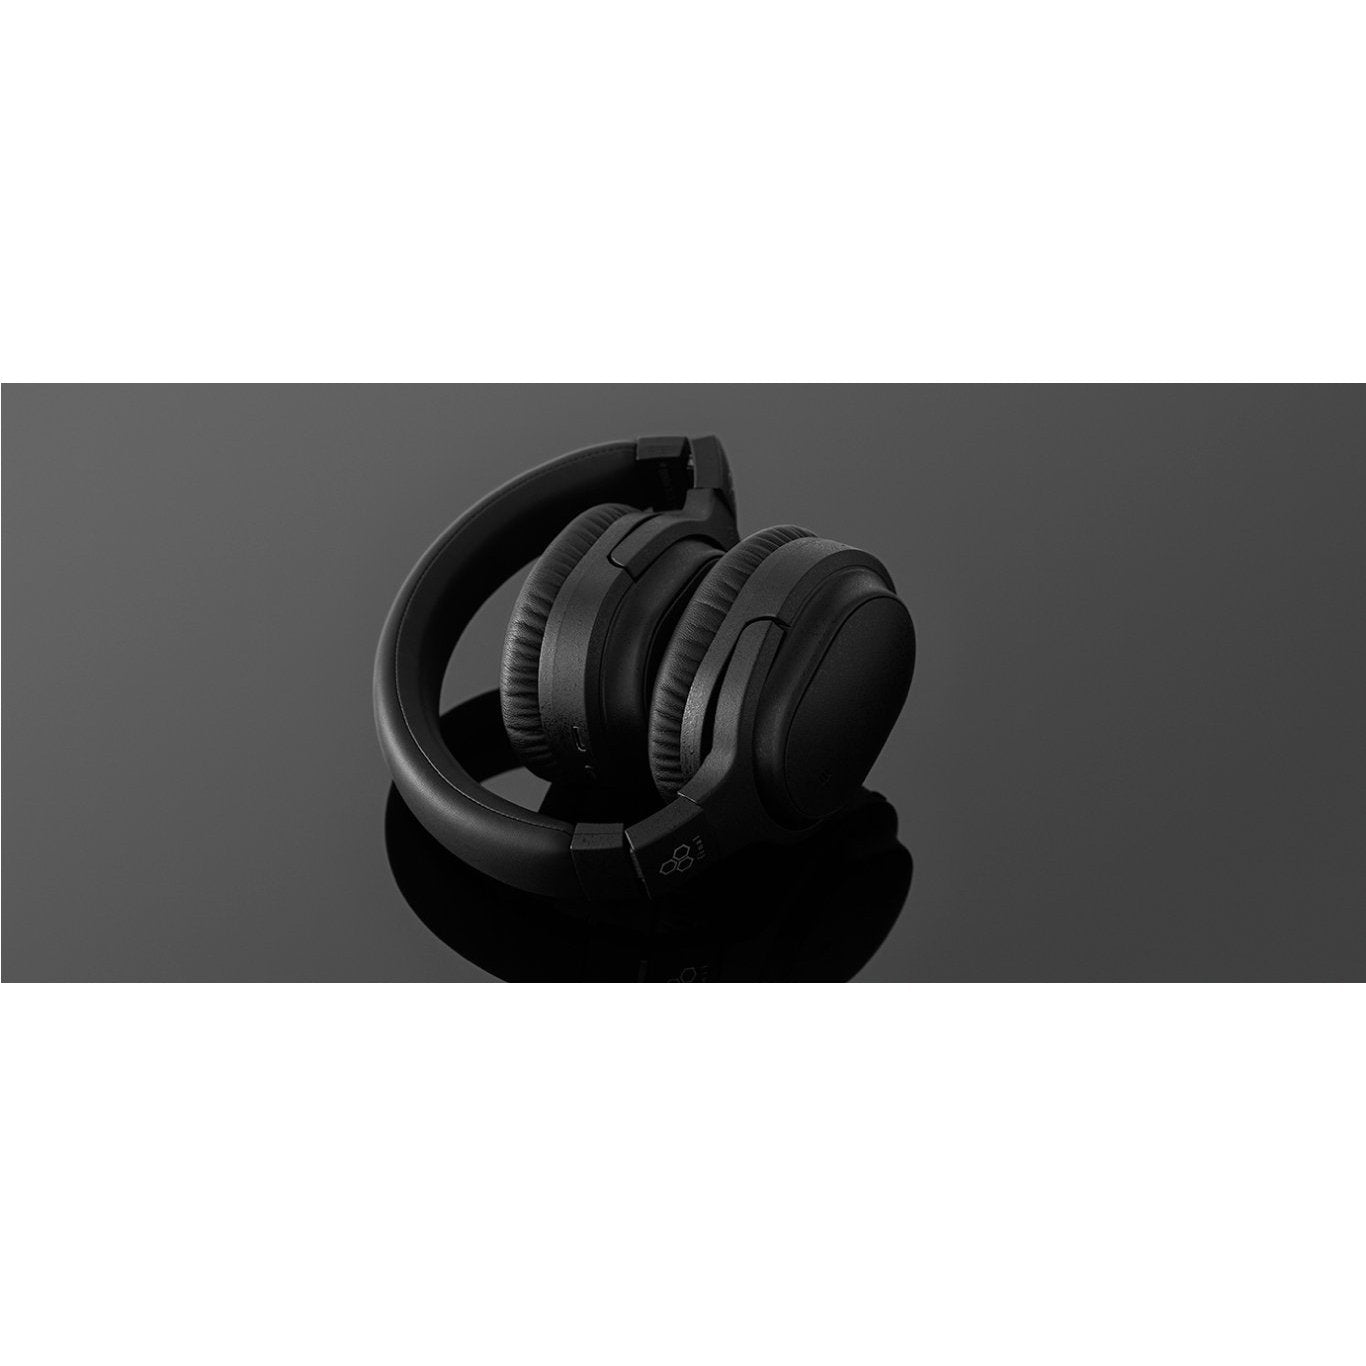 Final UX3000 Wireless Over-ear Headphones | Bloom Audio